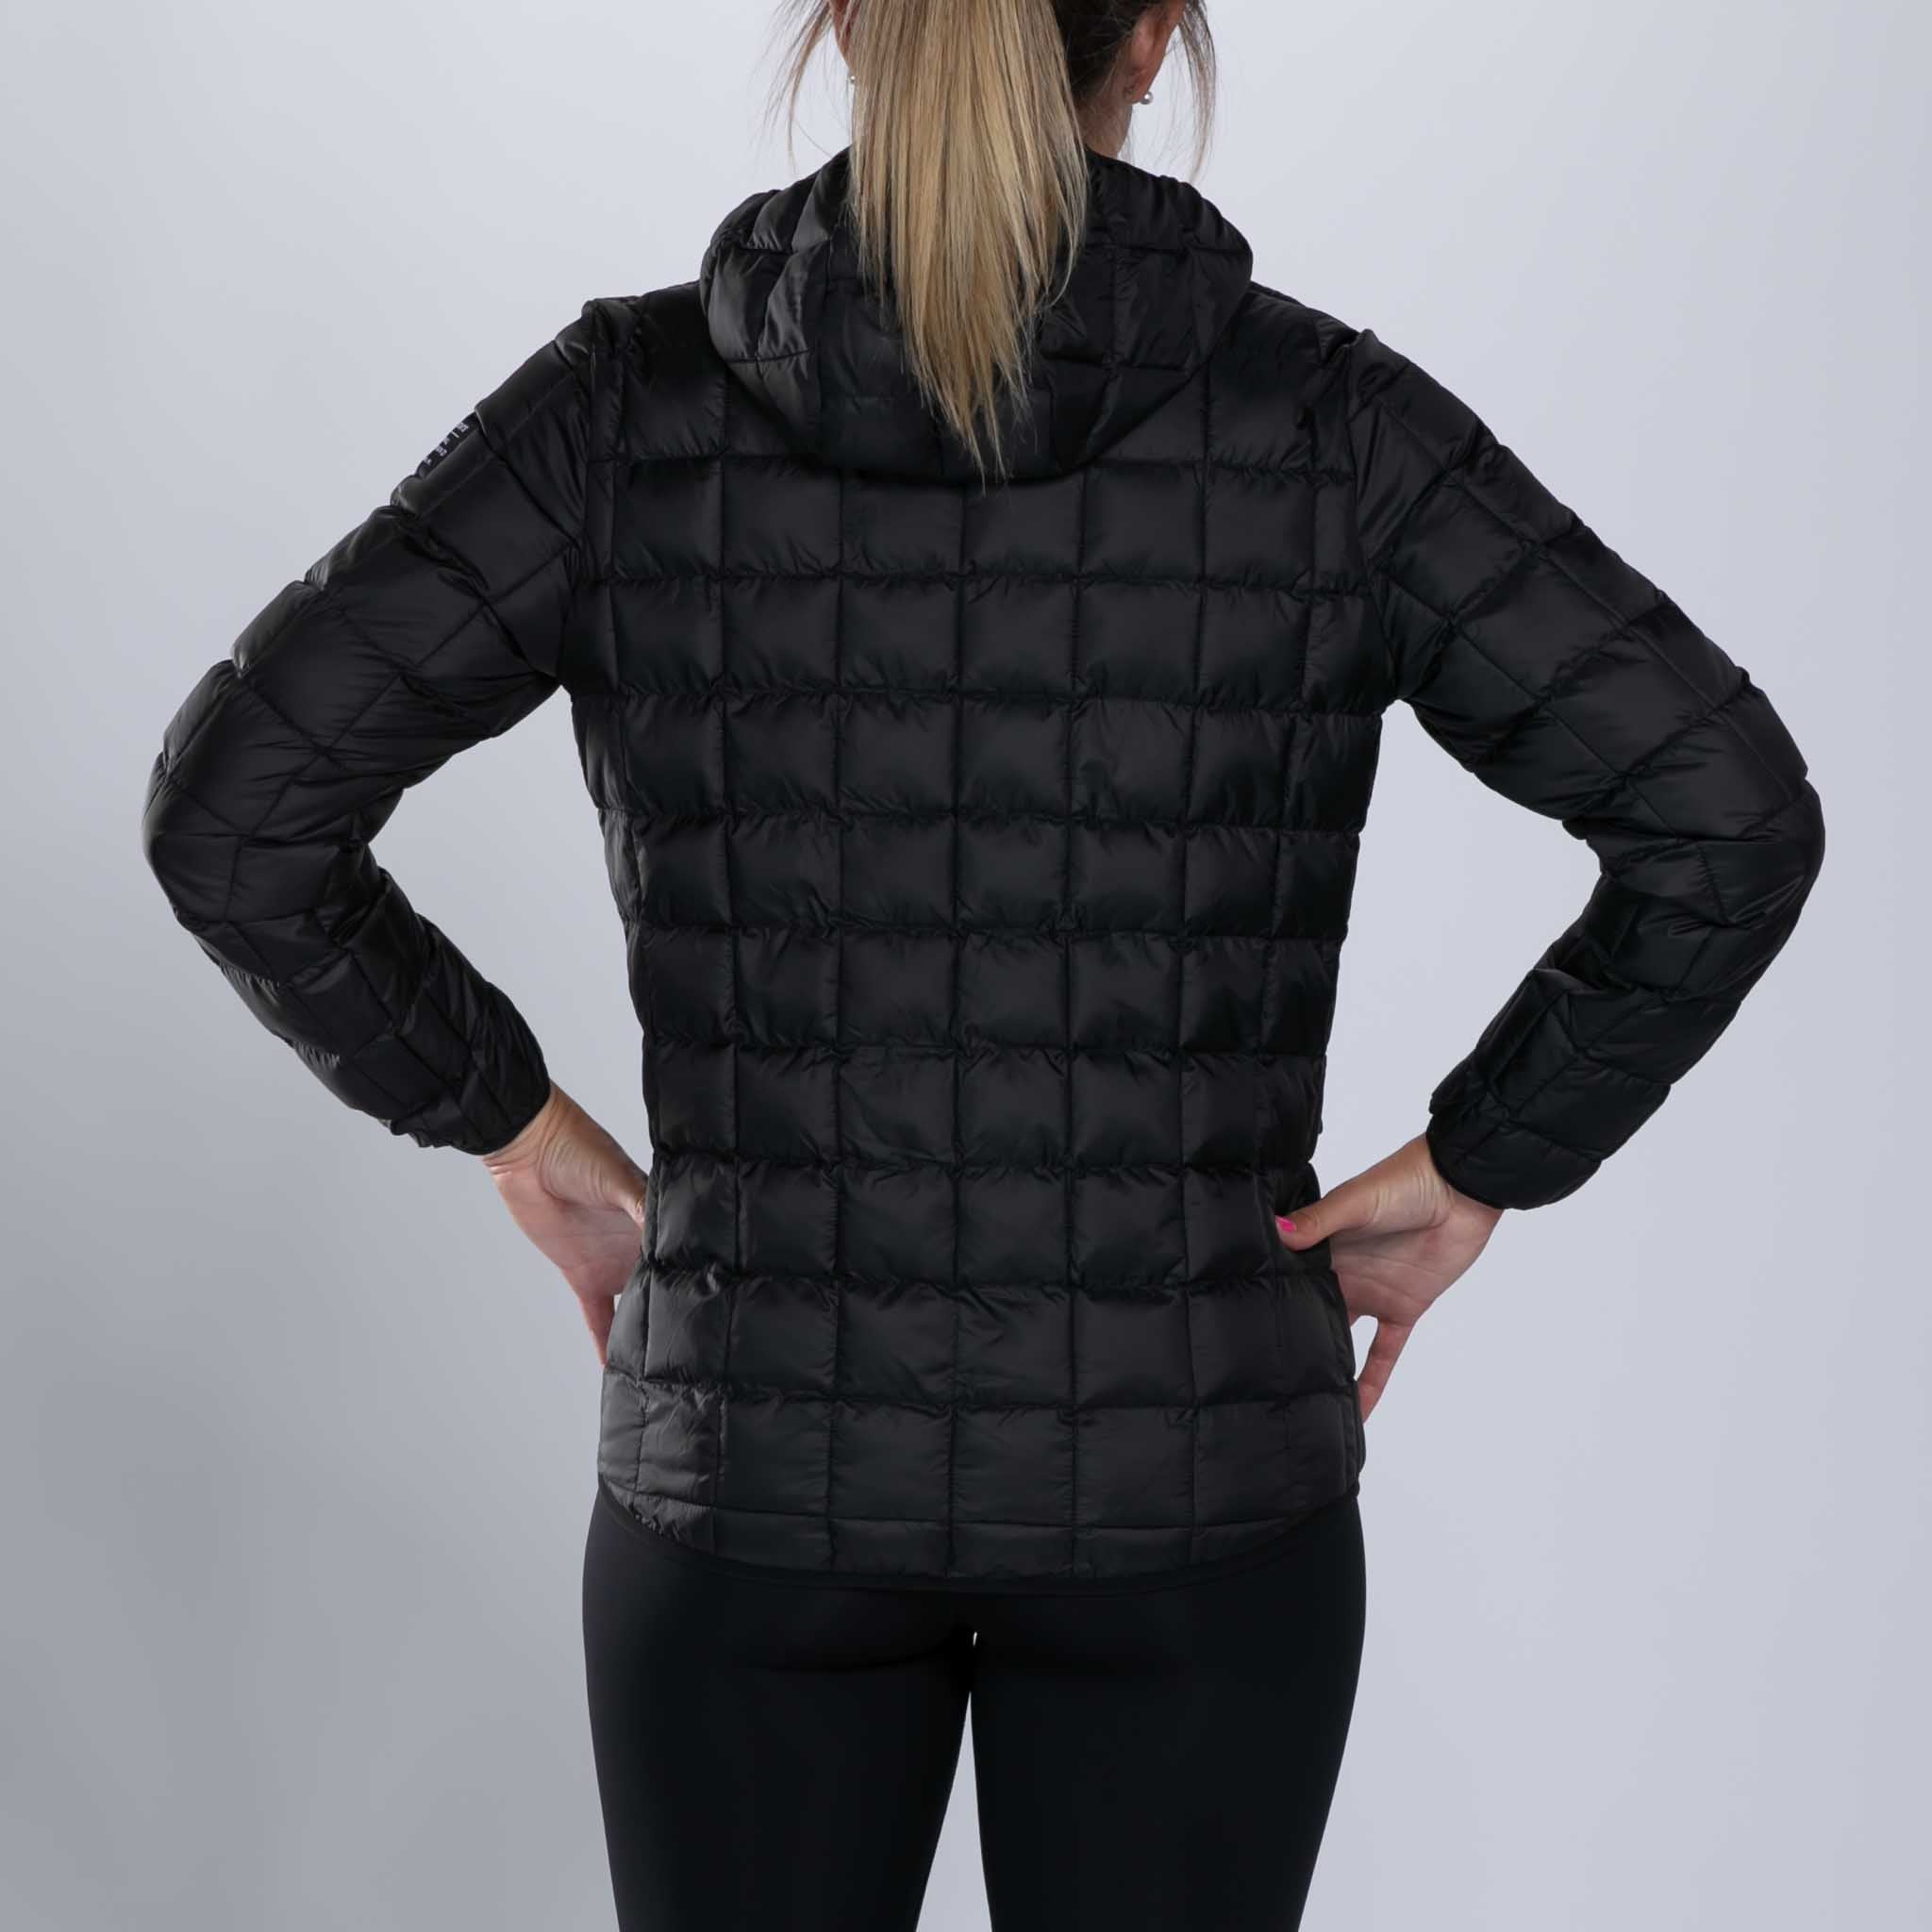 Zoot Sports RUN OUTERWEAR Women's Elite Puffer Jacket - Black